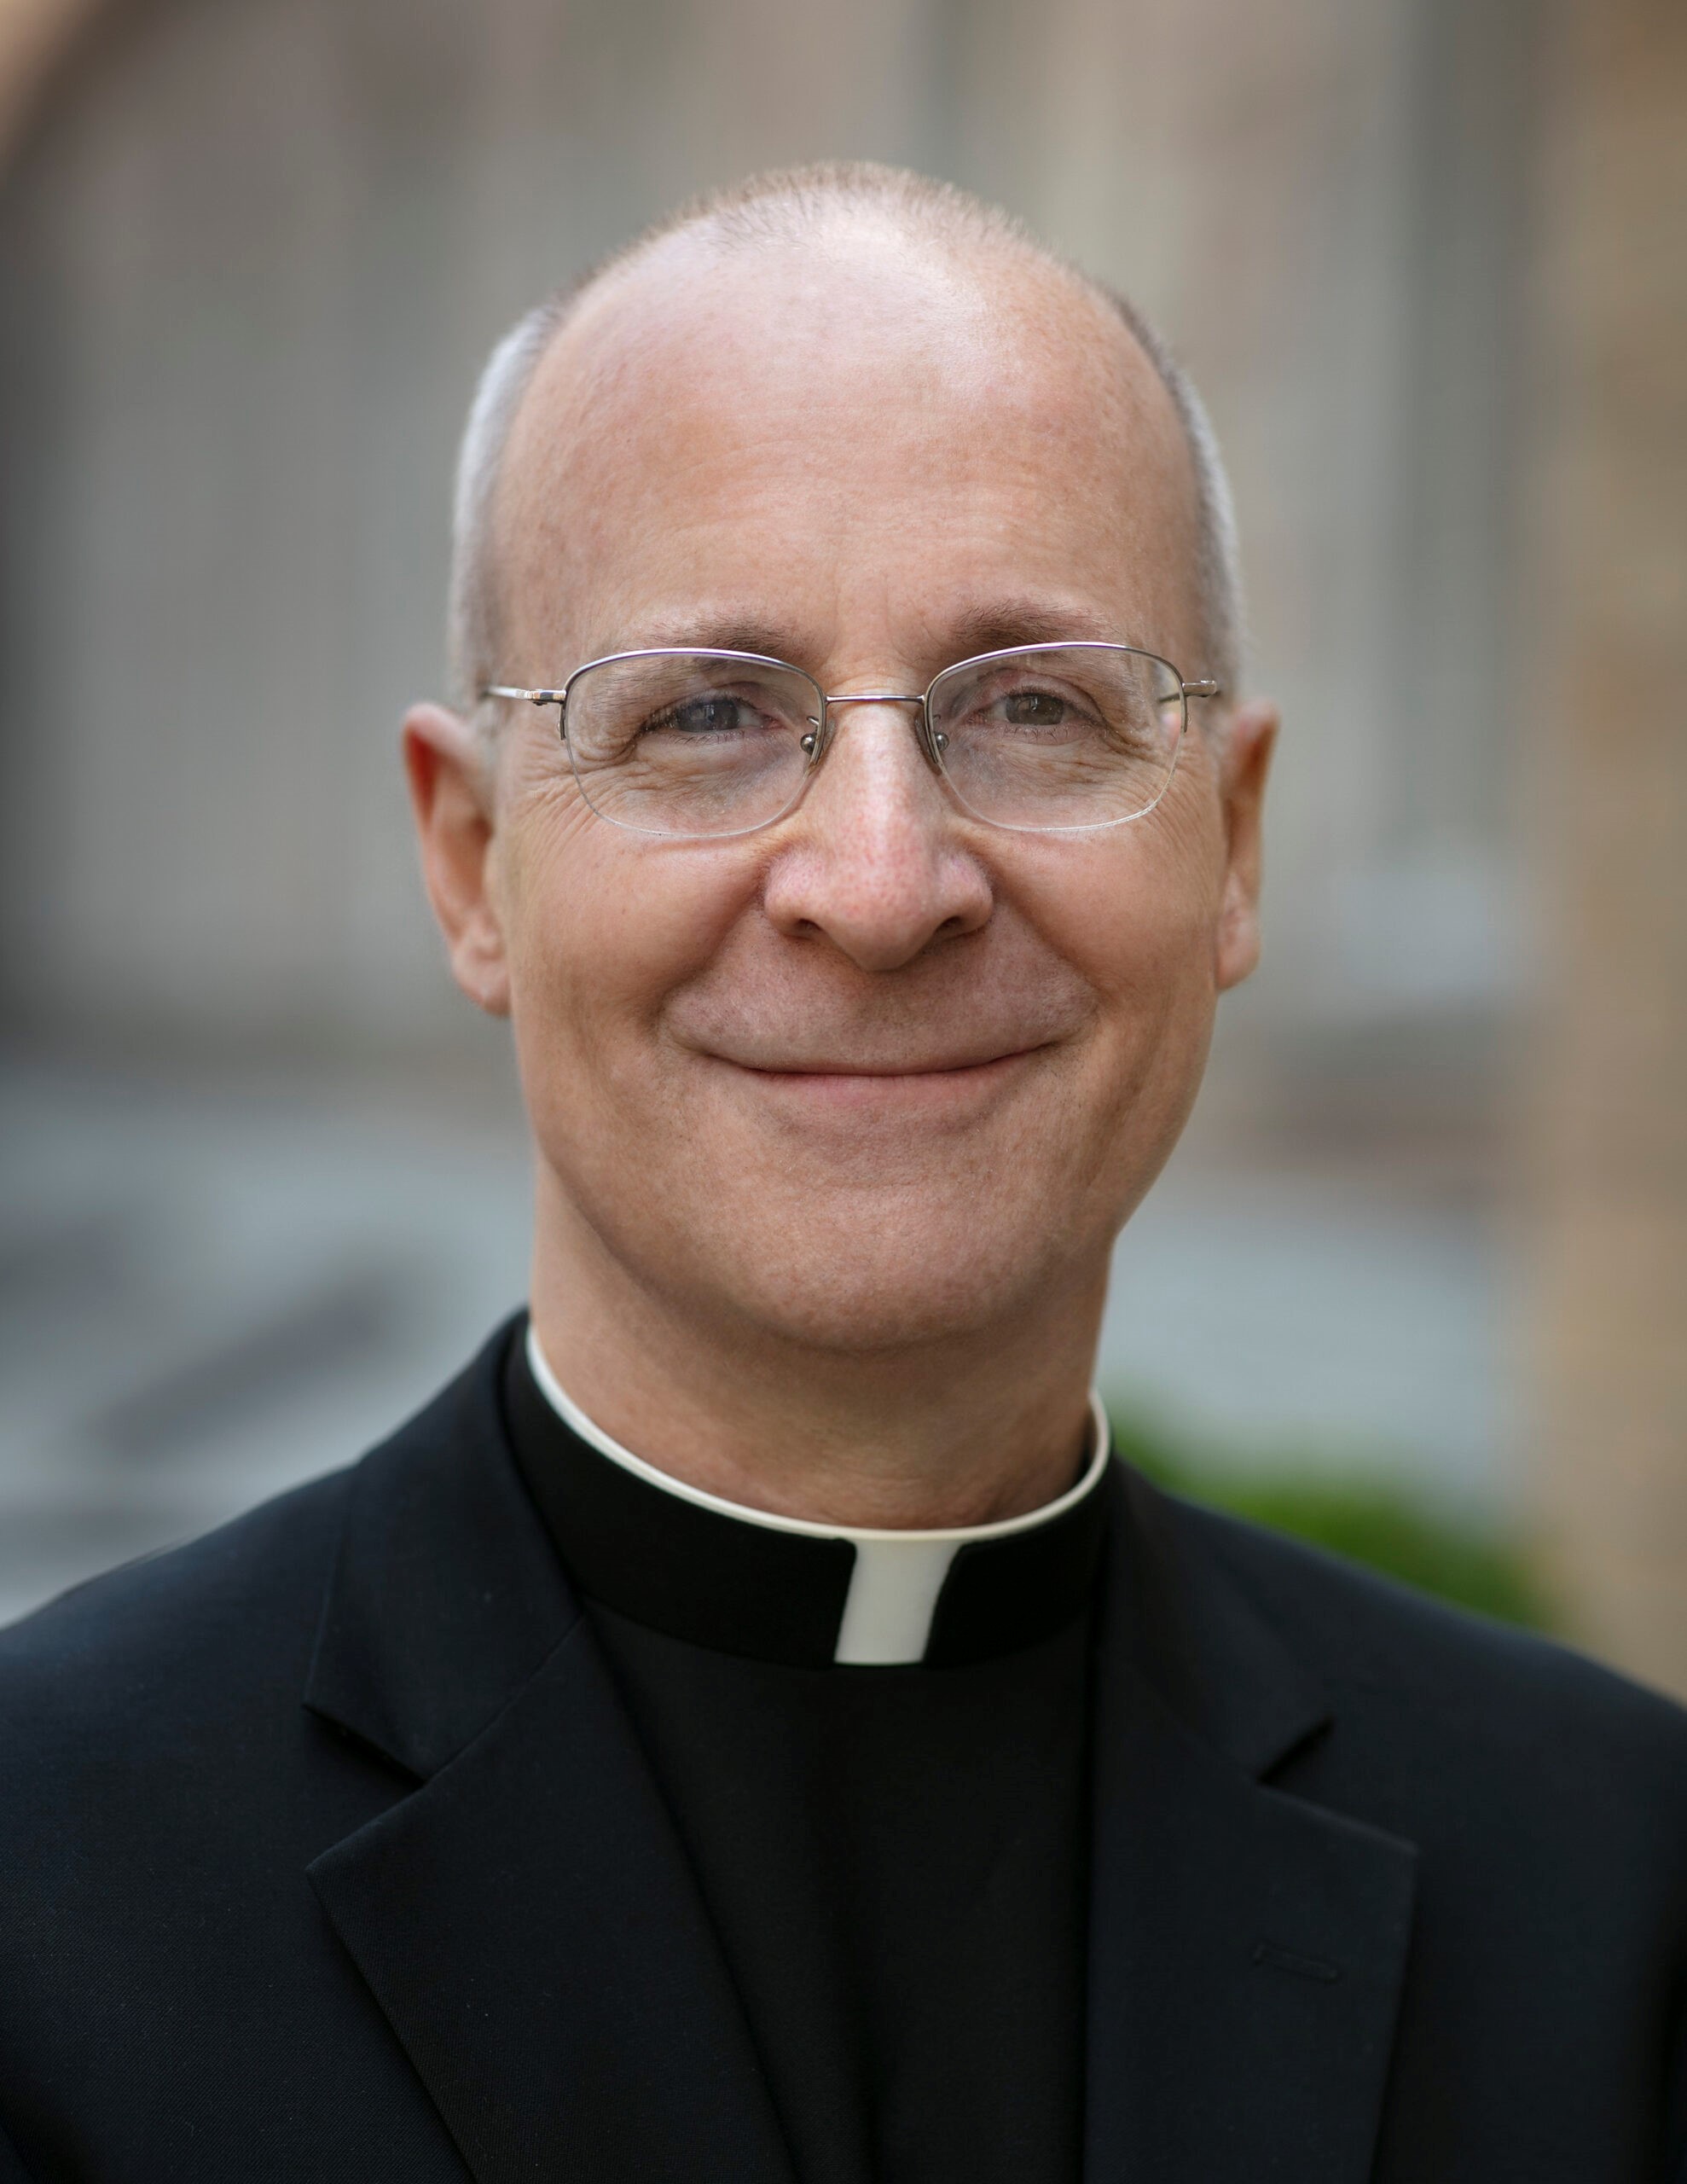 Padre James Martin, presbítero jesuíta e assessor do Vaticano.